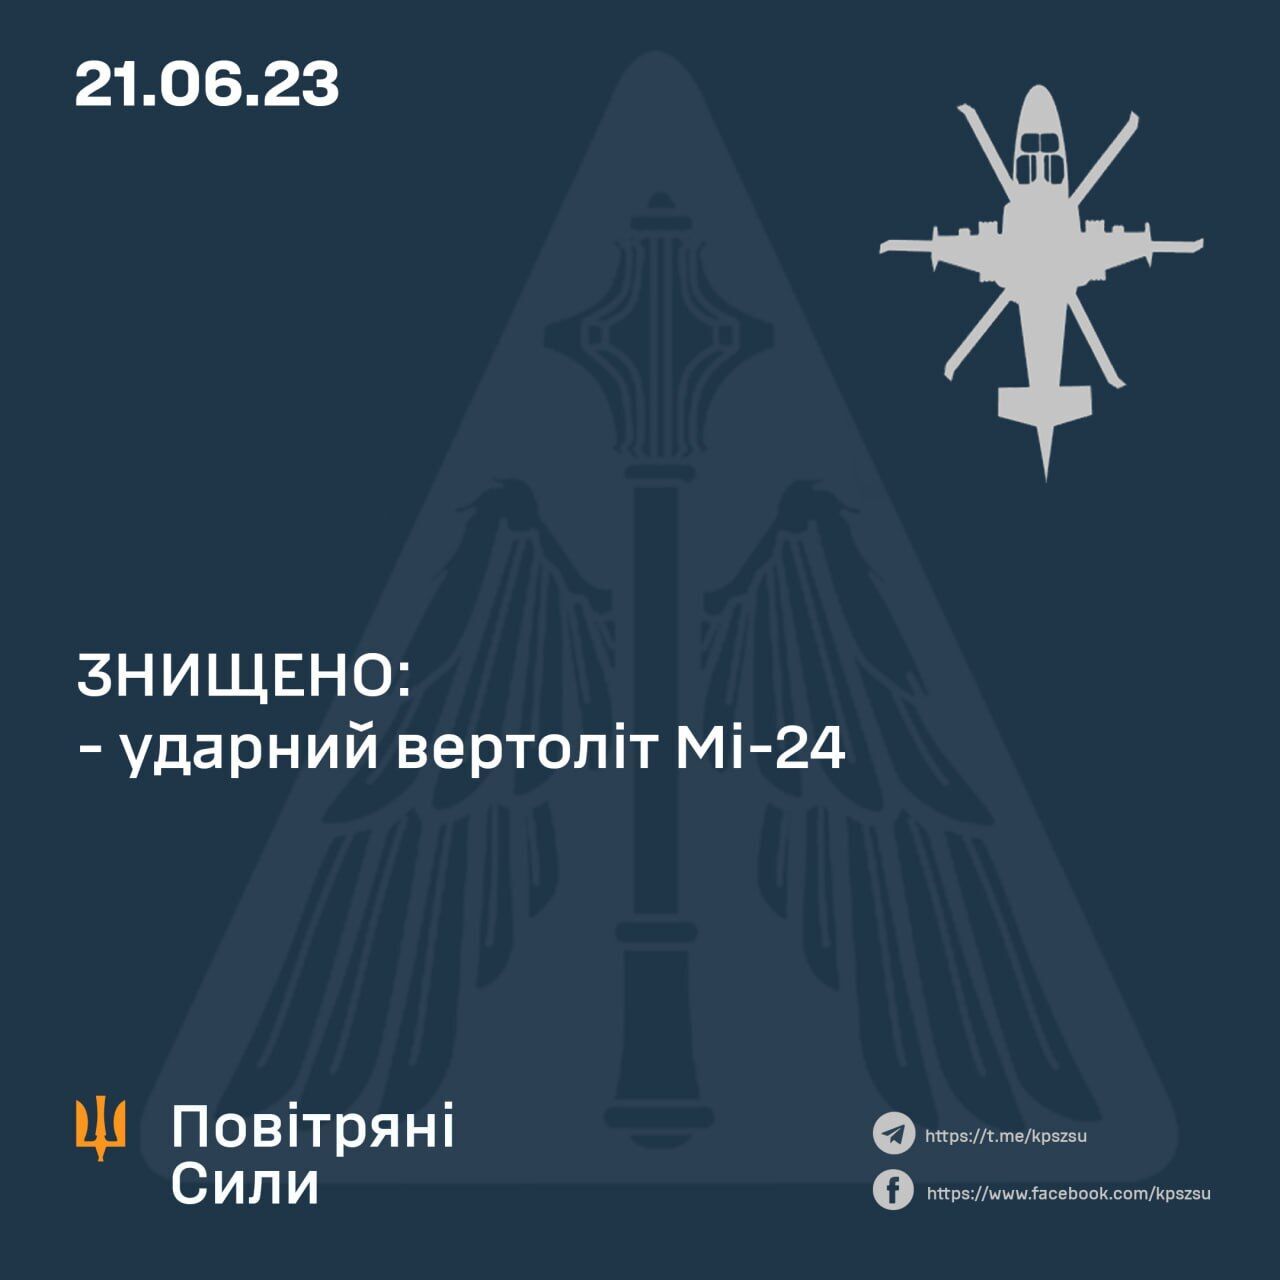 Подтверждено сбитие российского Ми-24